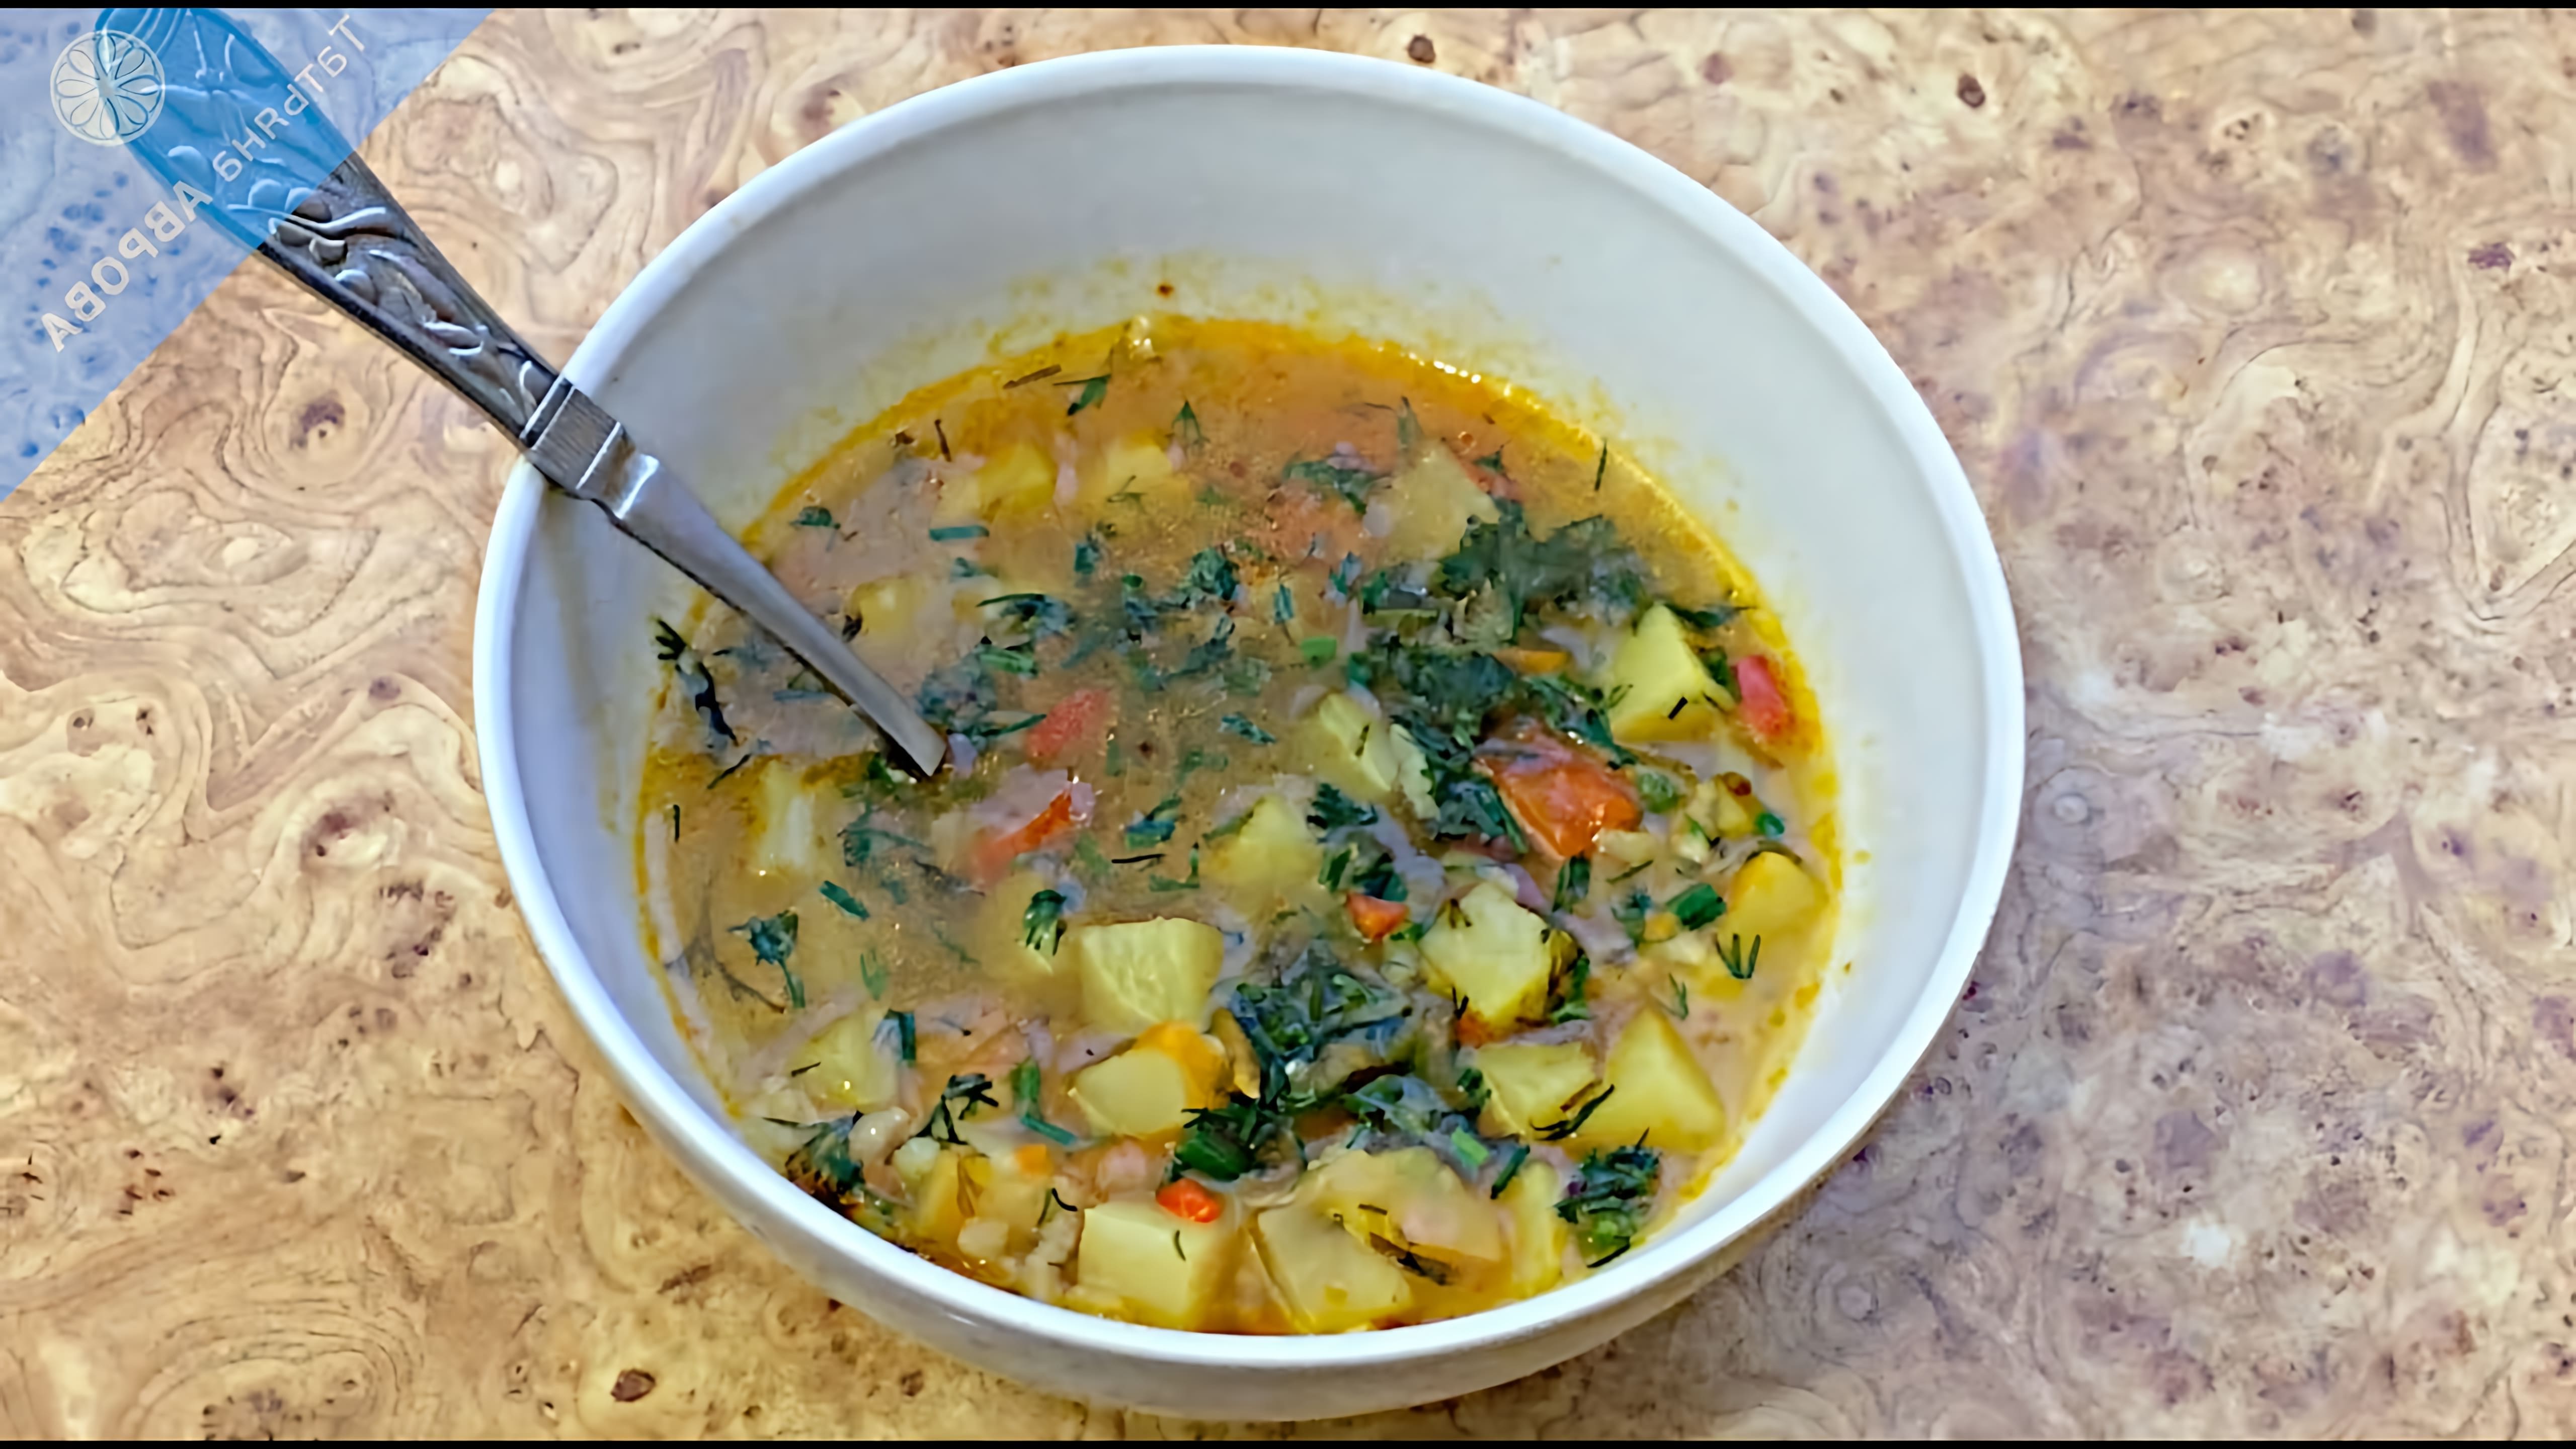 В этом видео демонстрируется рецепт приготовления простого, но очень вкусного овощного супа